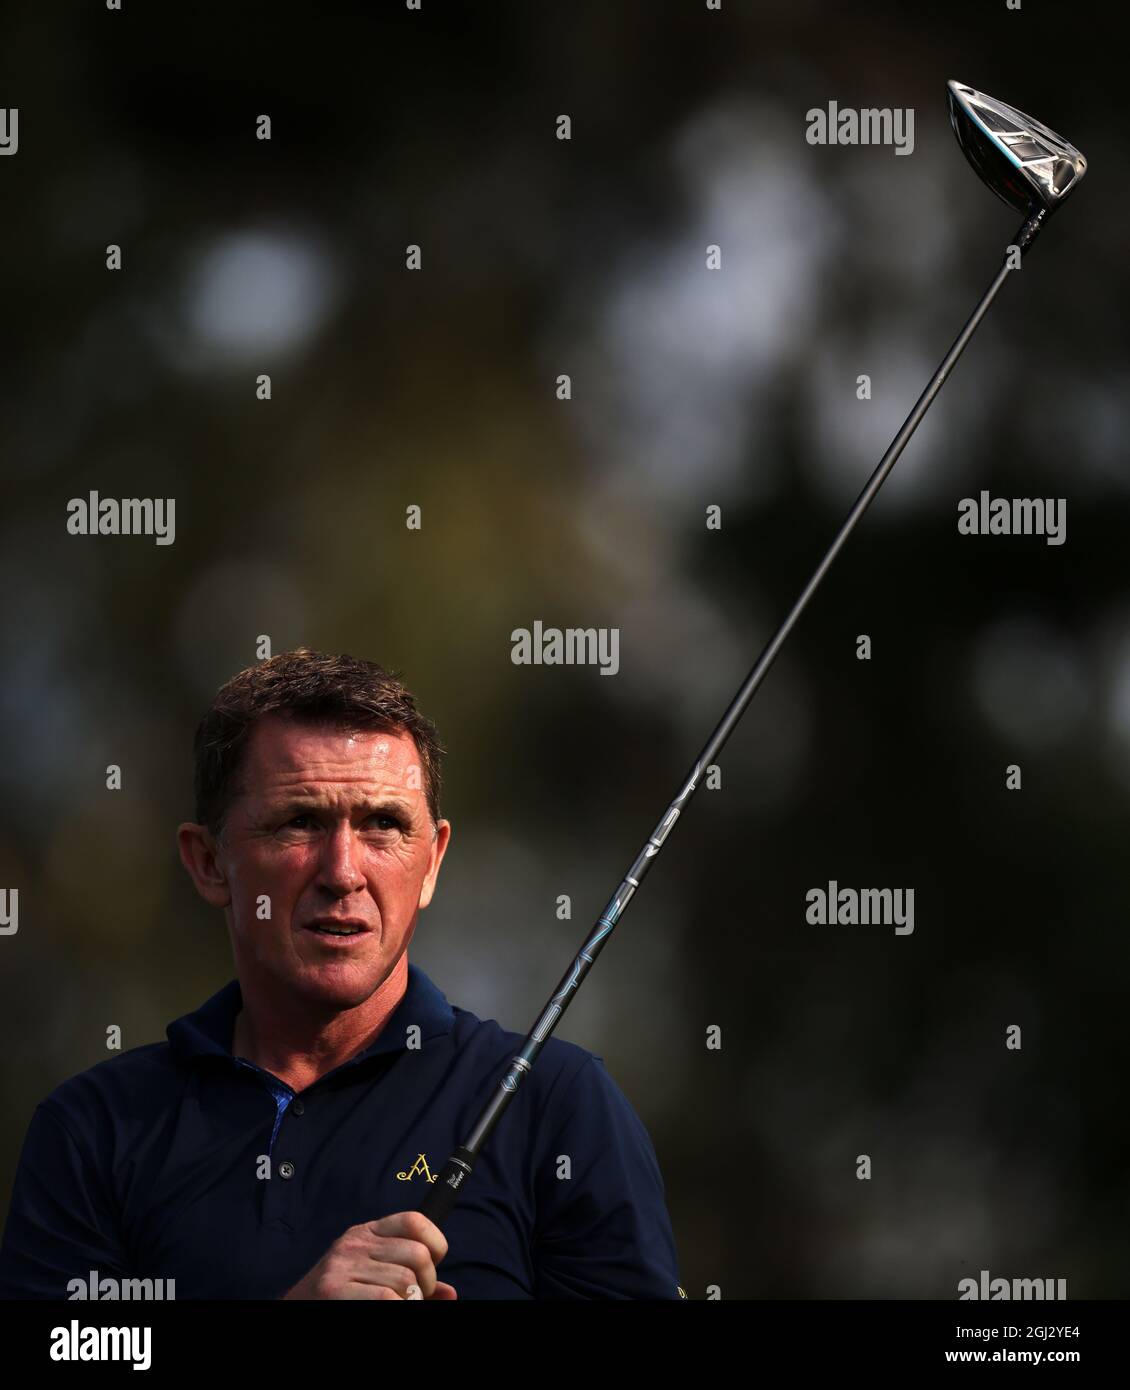 AP McCoy schlägt den 9. Während des Pro-am für die BMW PGA Championship im Wentworth Golf Club, Virginia Water, ab. Bilddatum: Mittwoch, 8. September 2021. Stockfoto